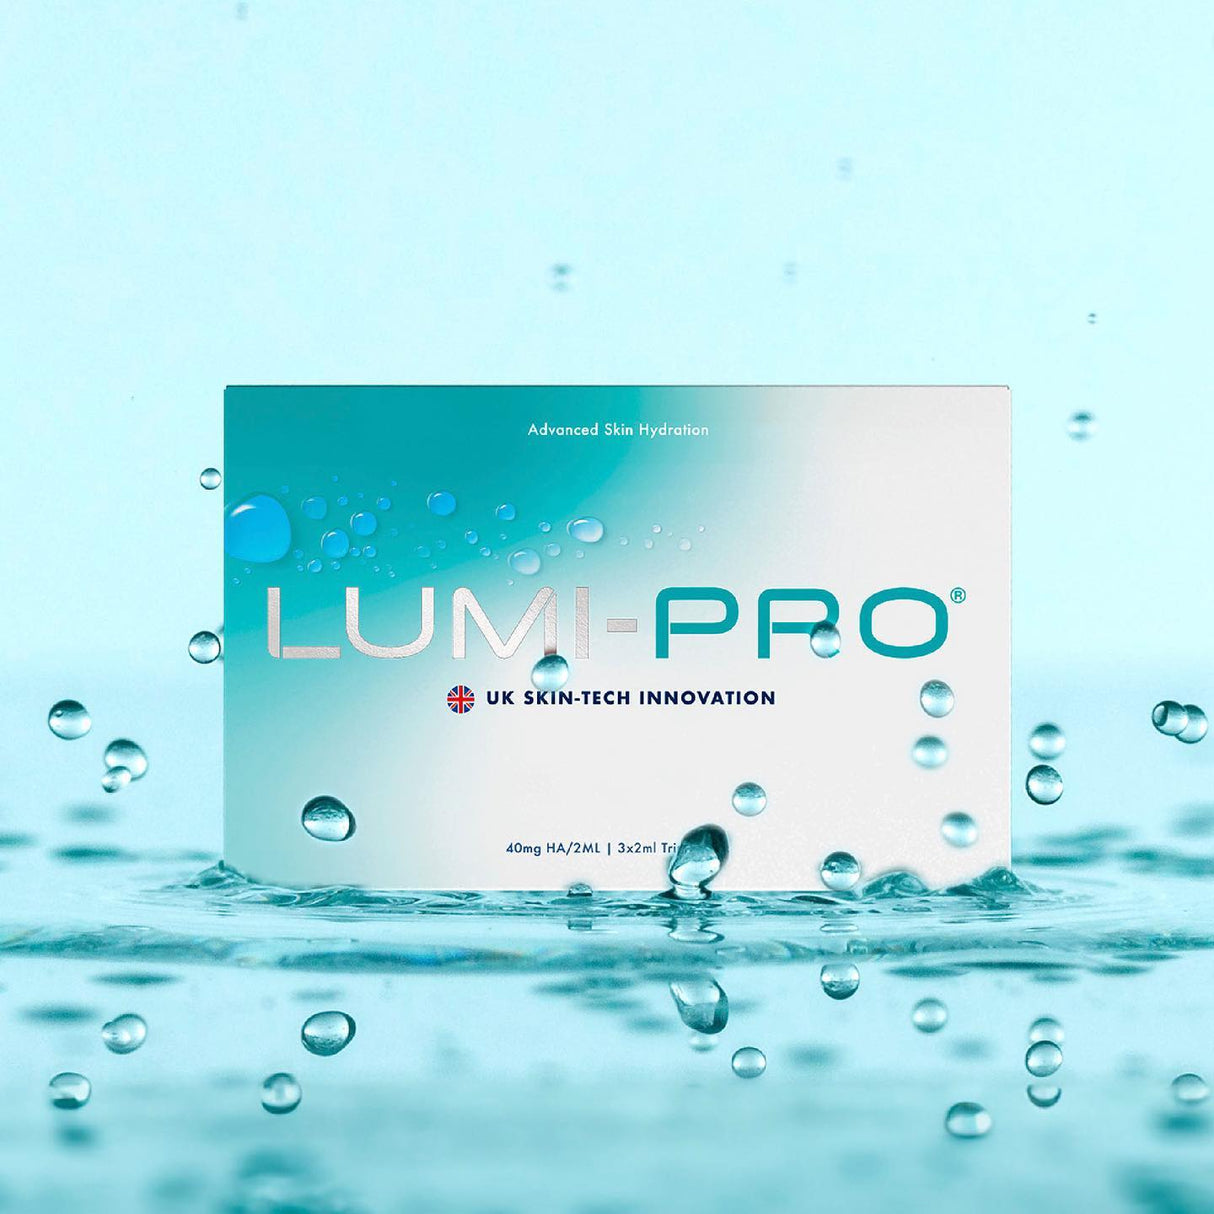 LUMI-PRO Skin Booster – Triple pack – 3 x 2ml